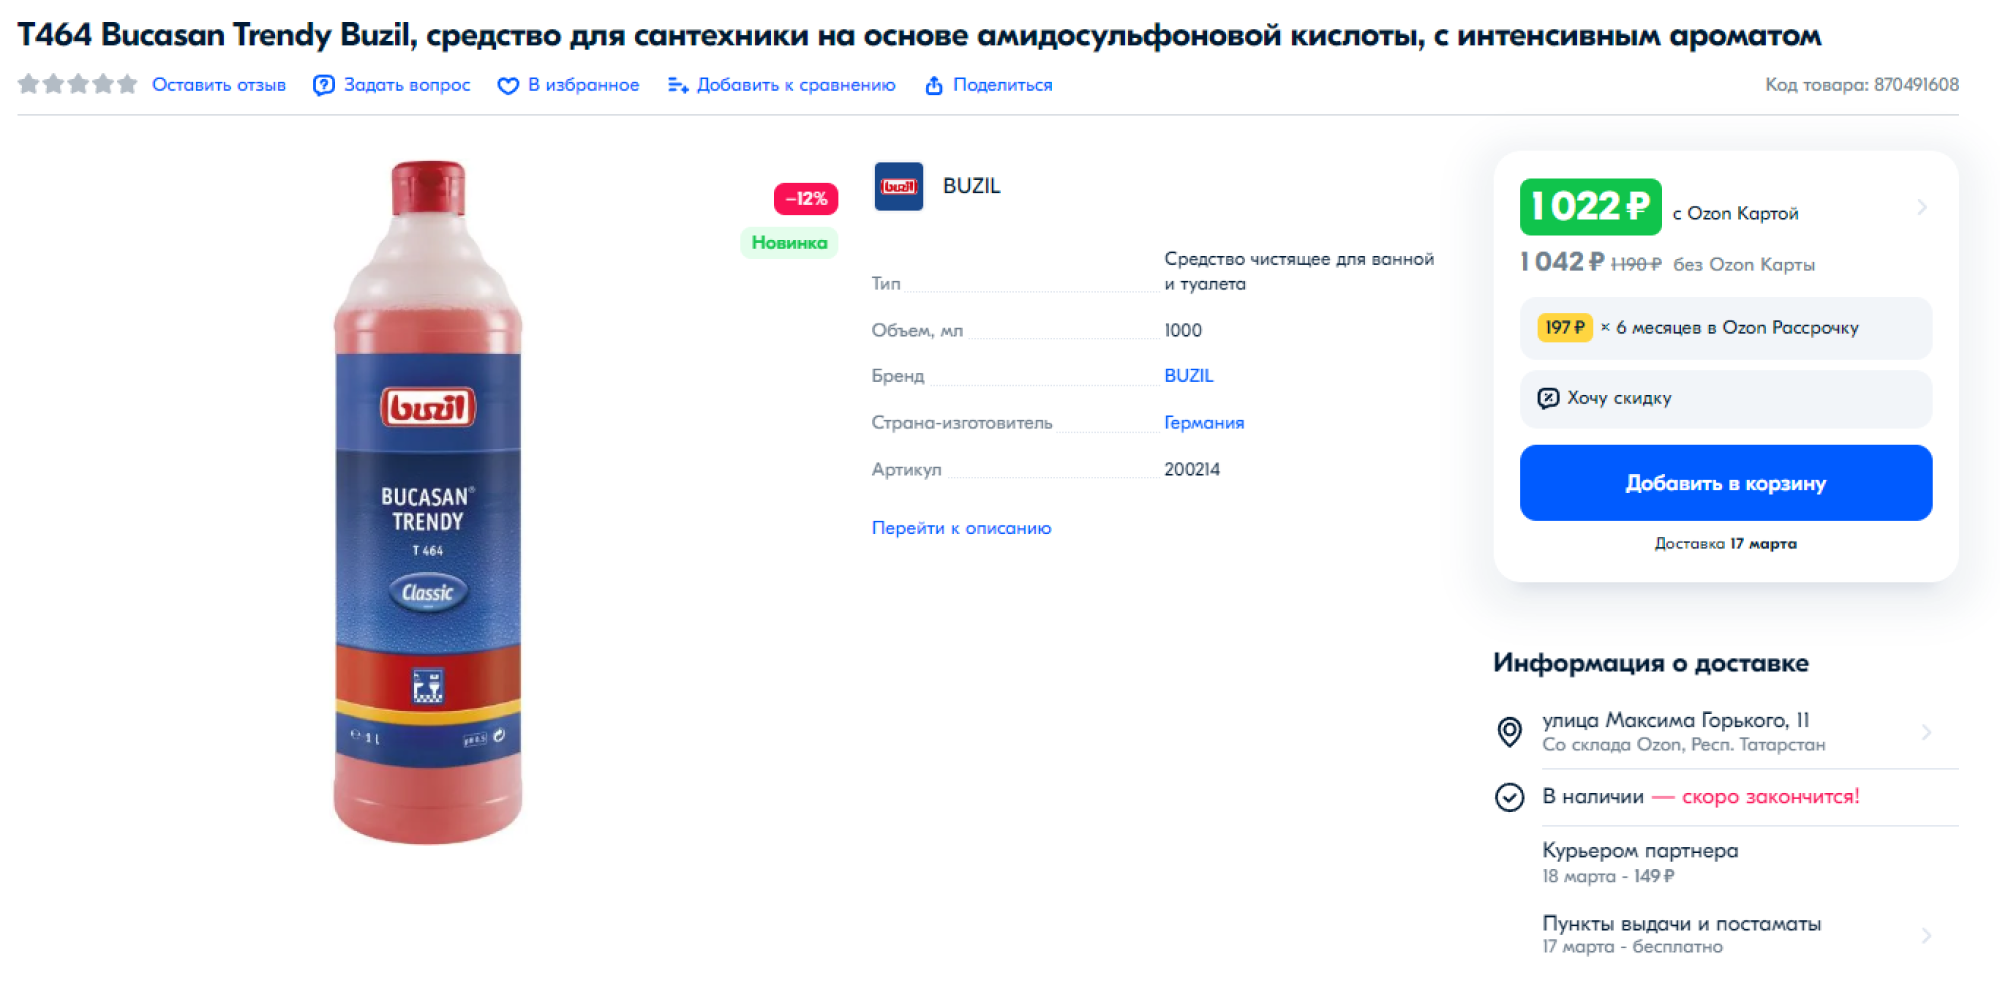 Литровой бутылки хватает на 200 моек унитаза. Источник: ozon.ru